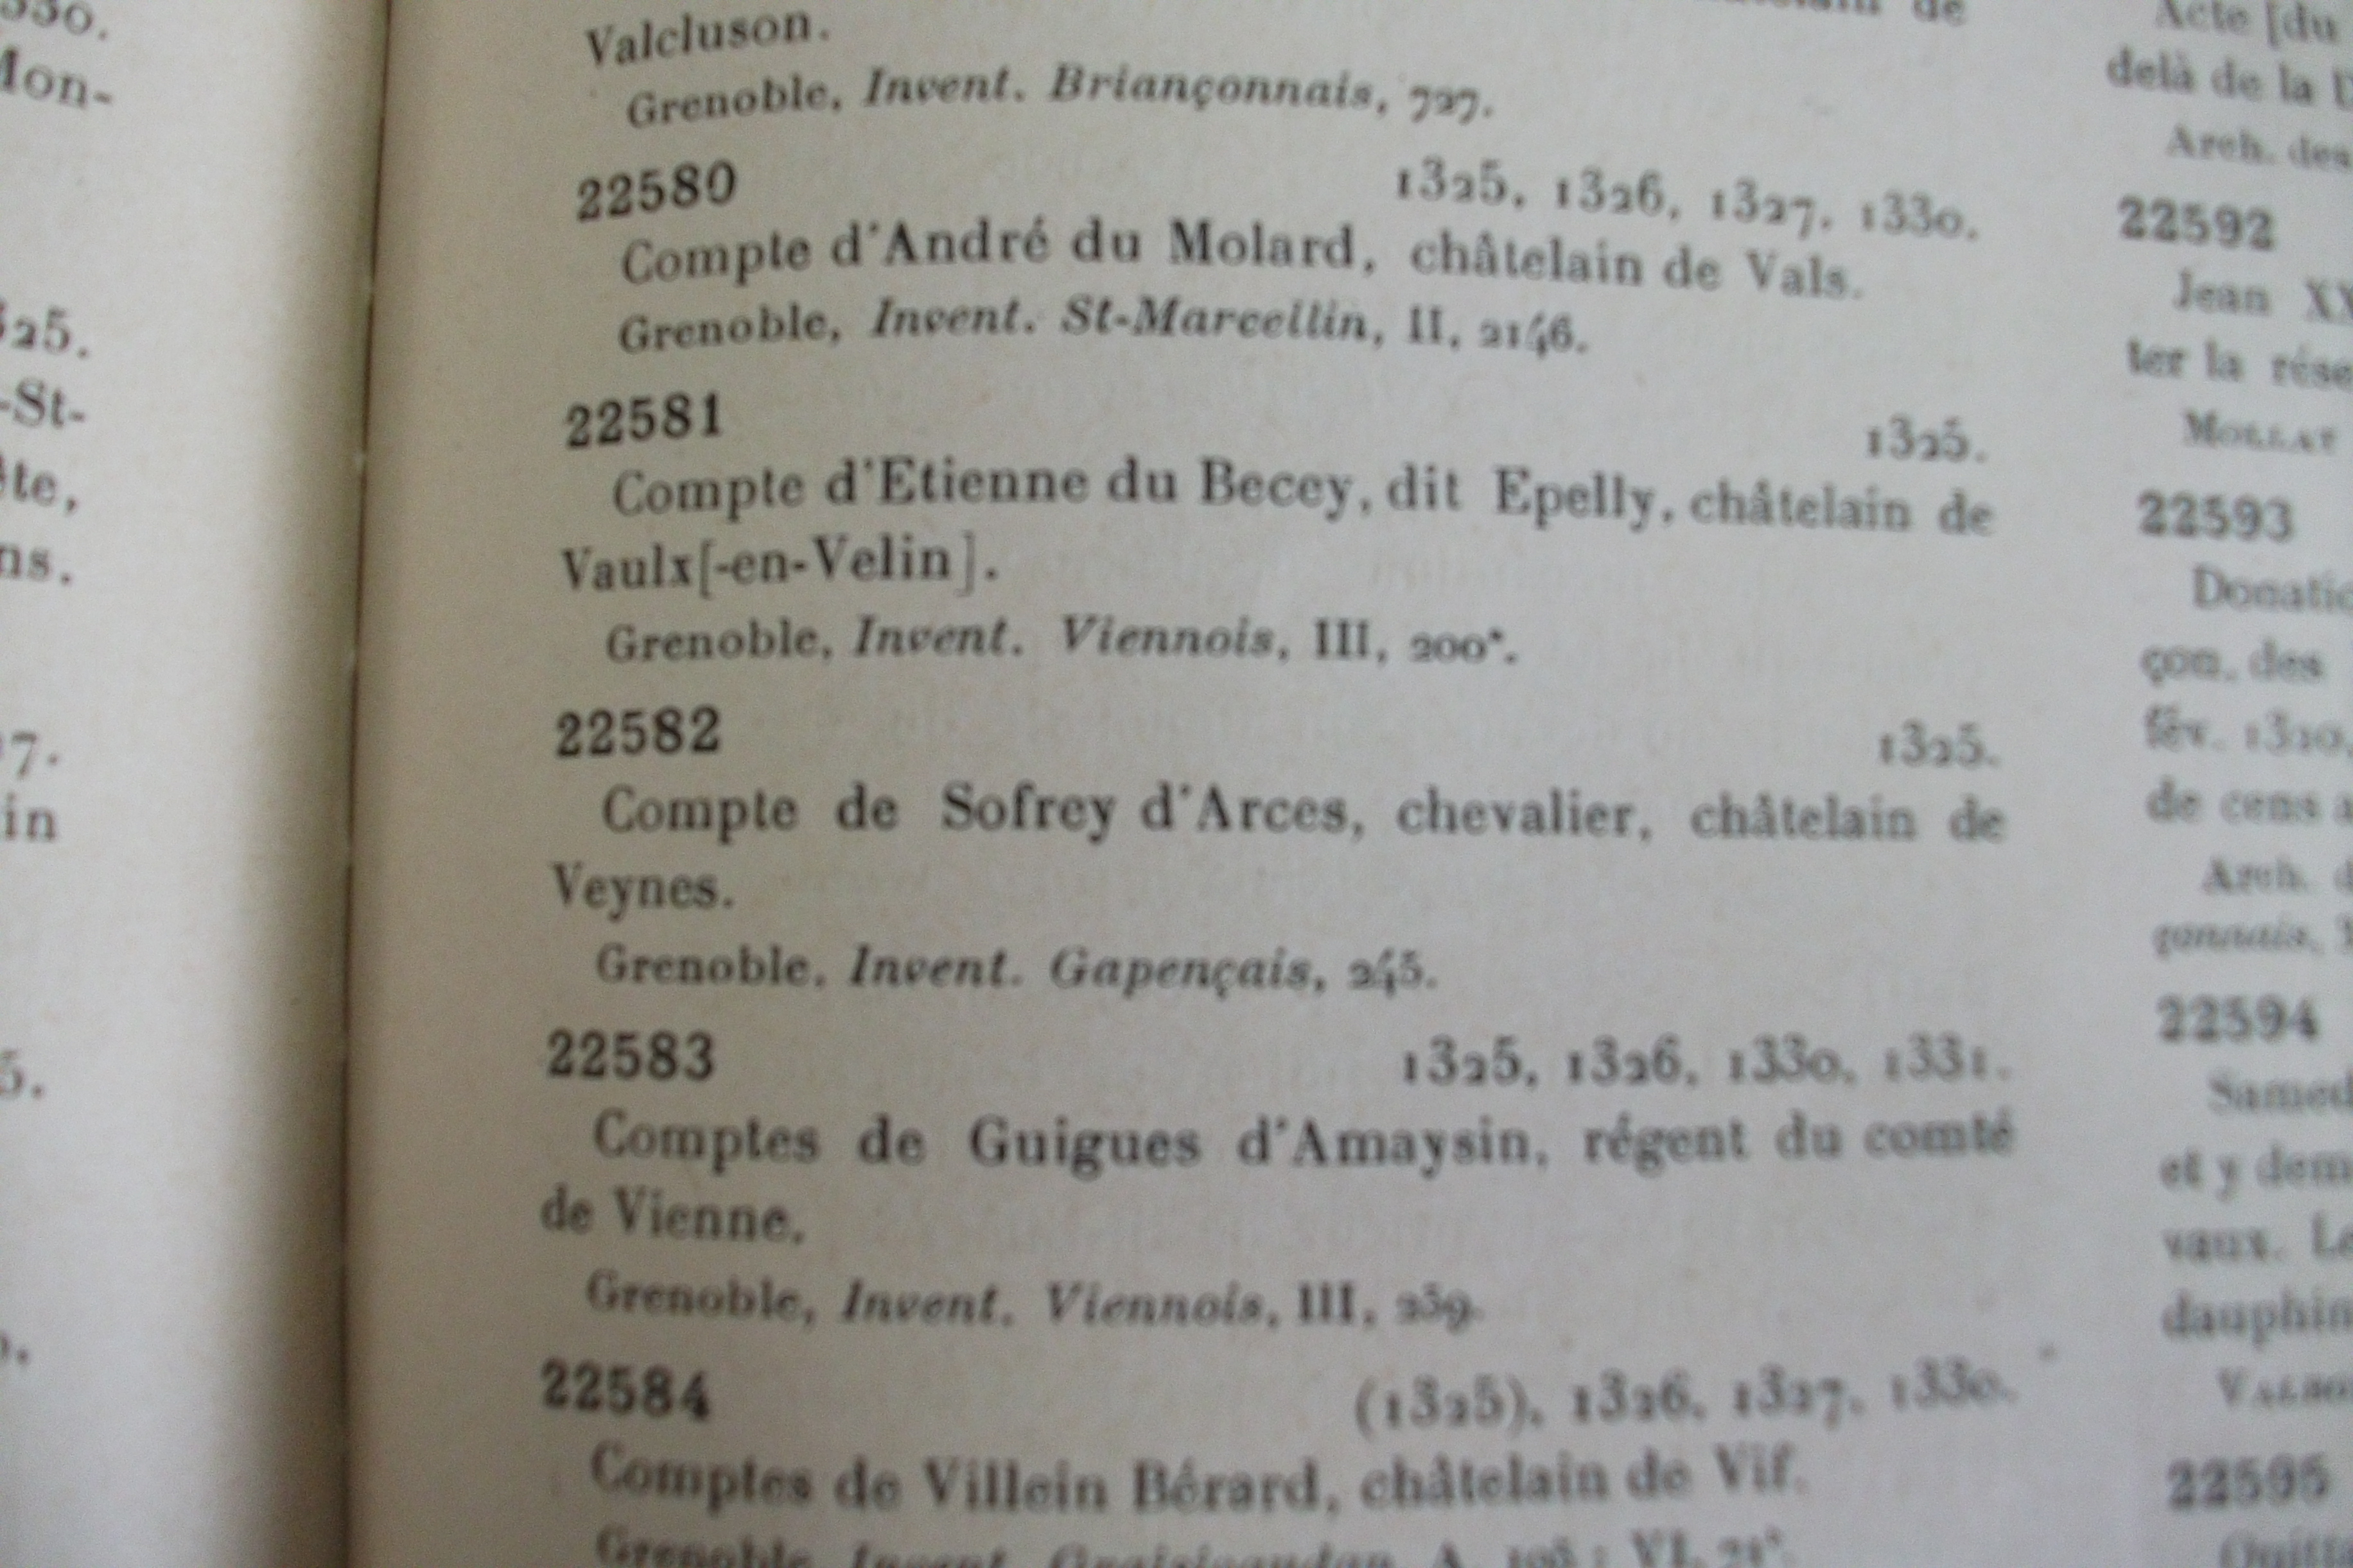 Etienne du Becey, premier chatelain de Vaulx-en-Velin